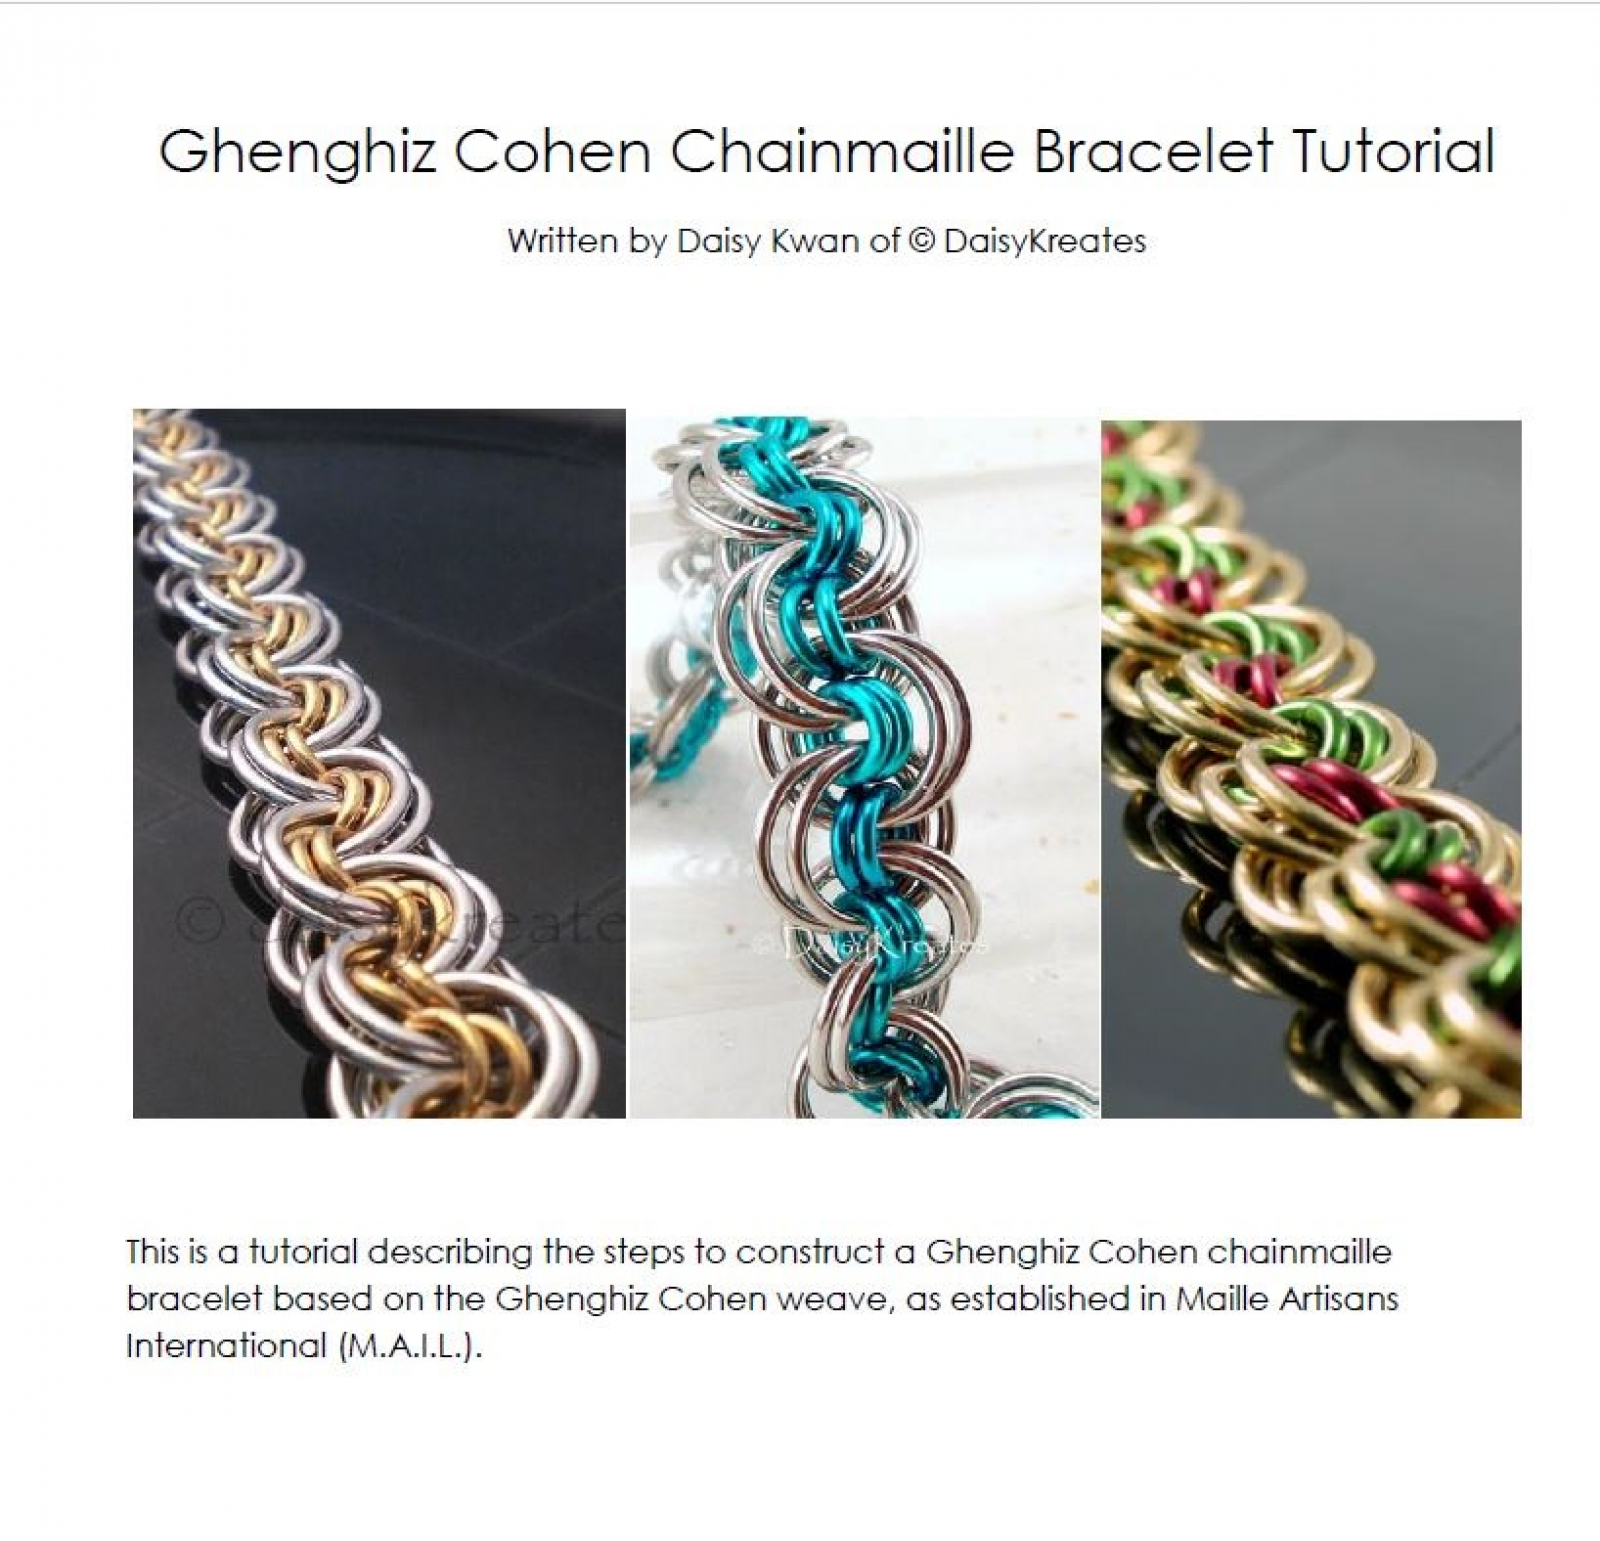 Ghenghiz Cohen Chainmaille Bracelet Tutorial